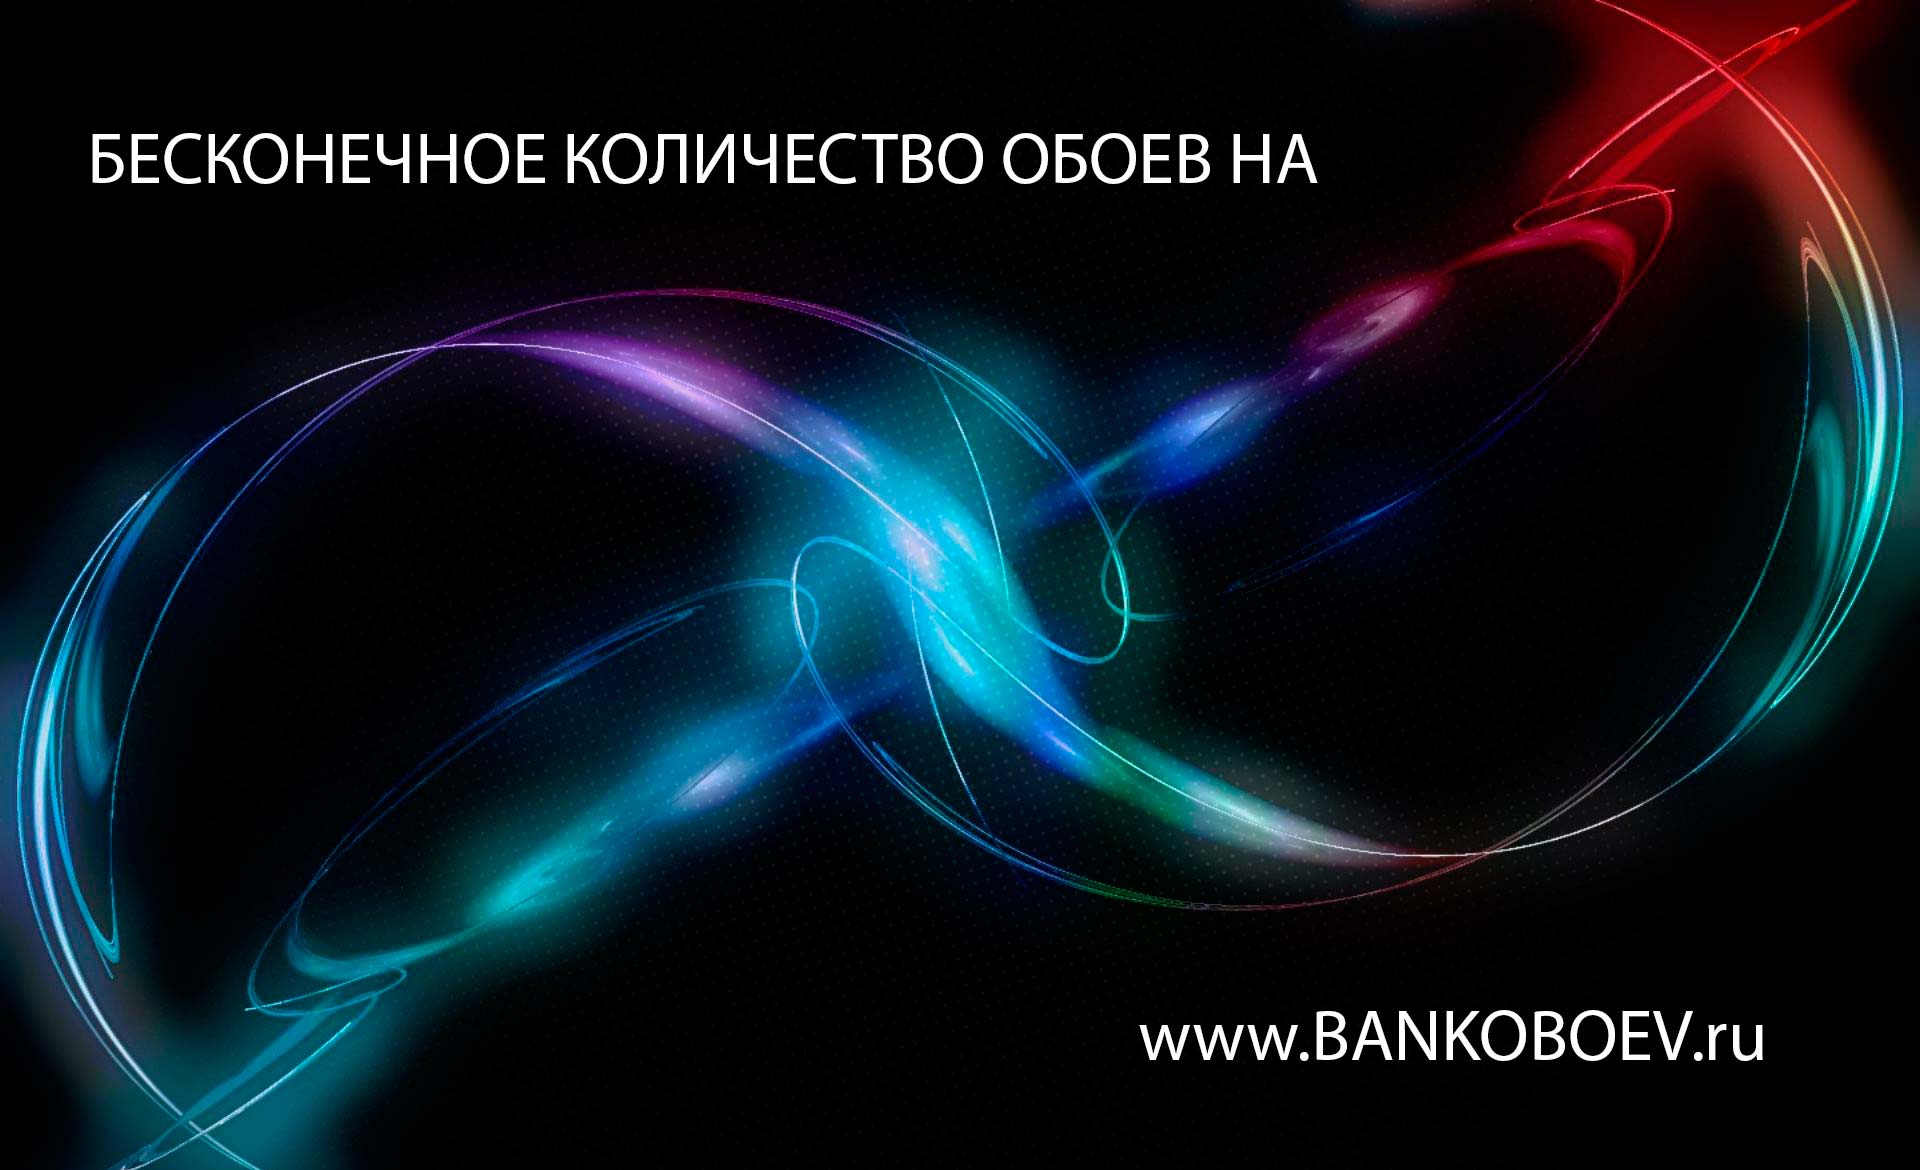 Image Mja2ntg0 Bankoboev Ru Jpg